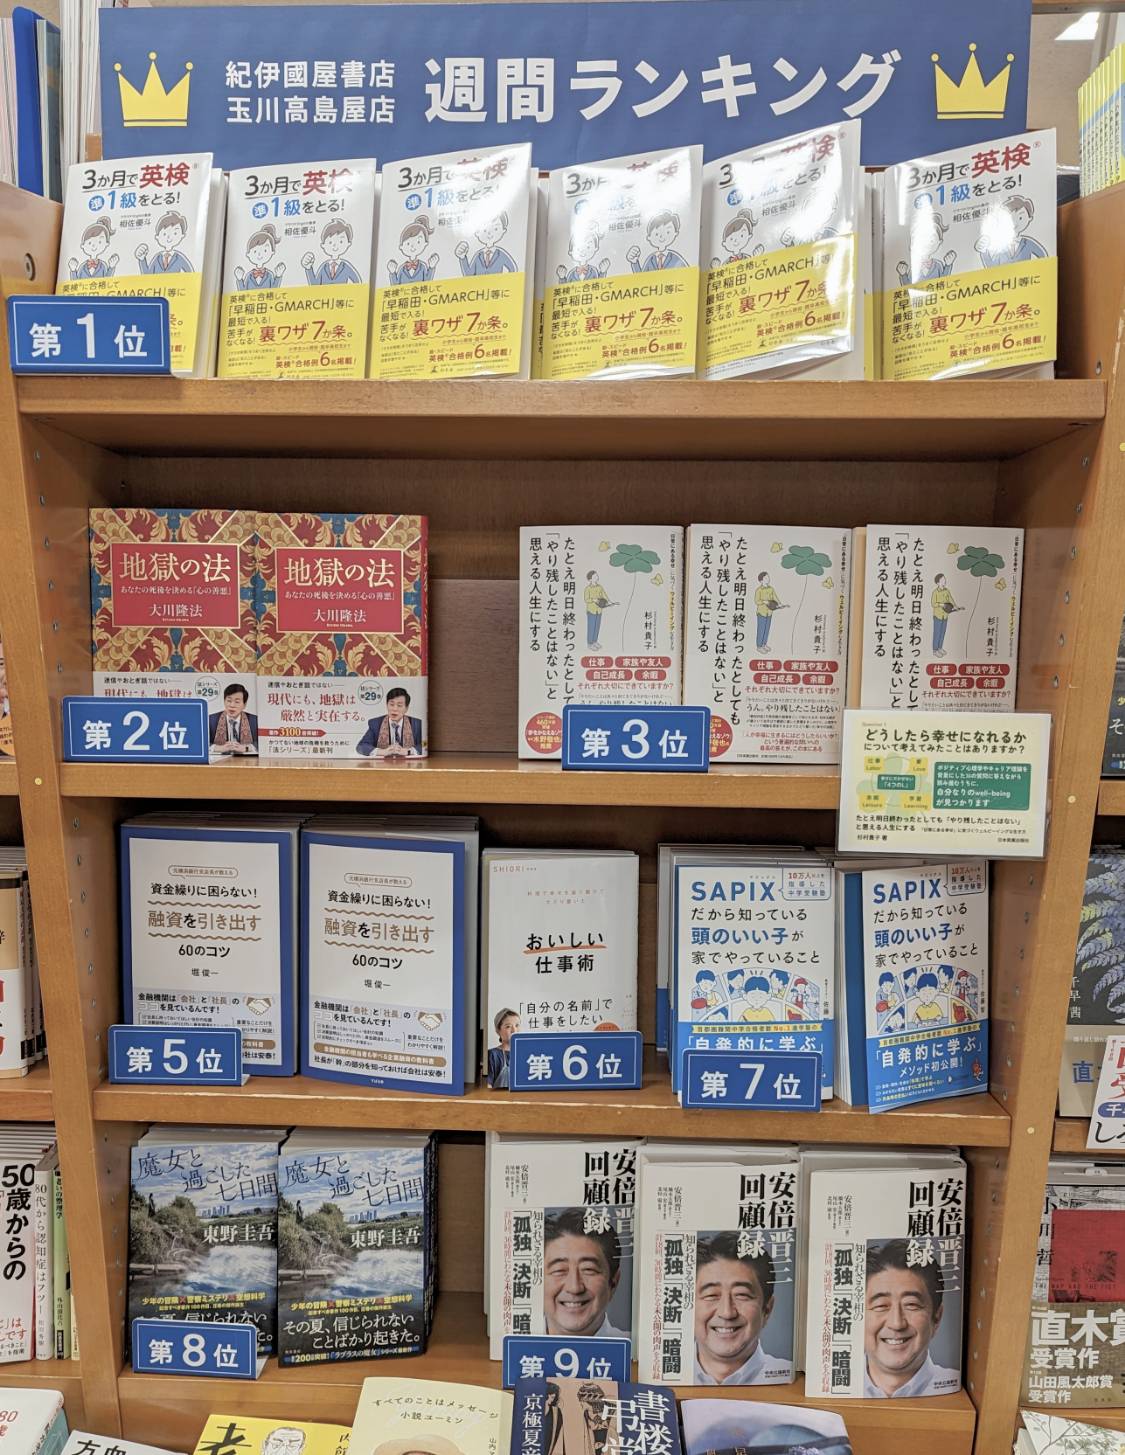 紀伊國屋書店玉川高島屋店様の『週間ランキング』総合第３位にランクインしました。